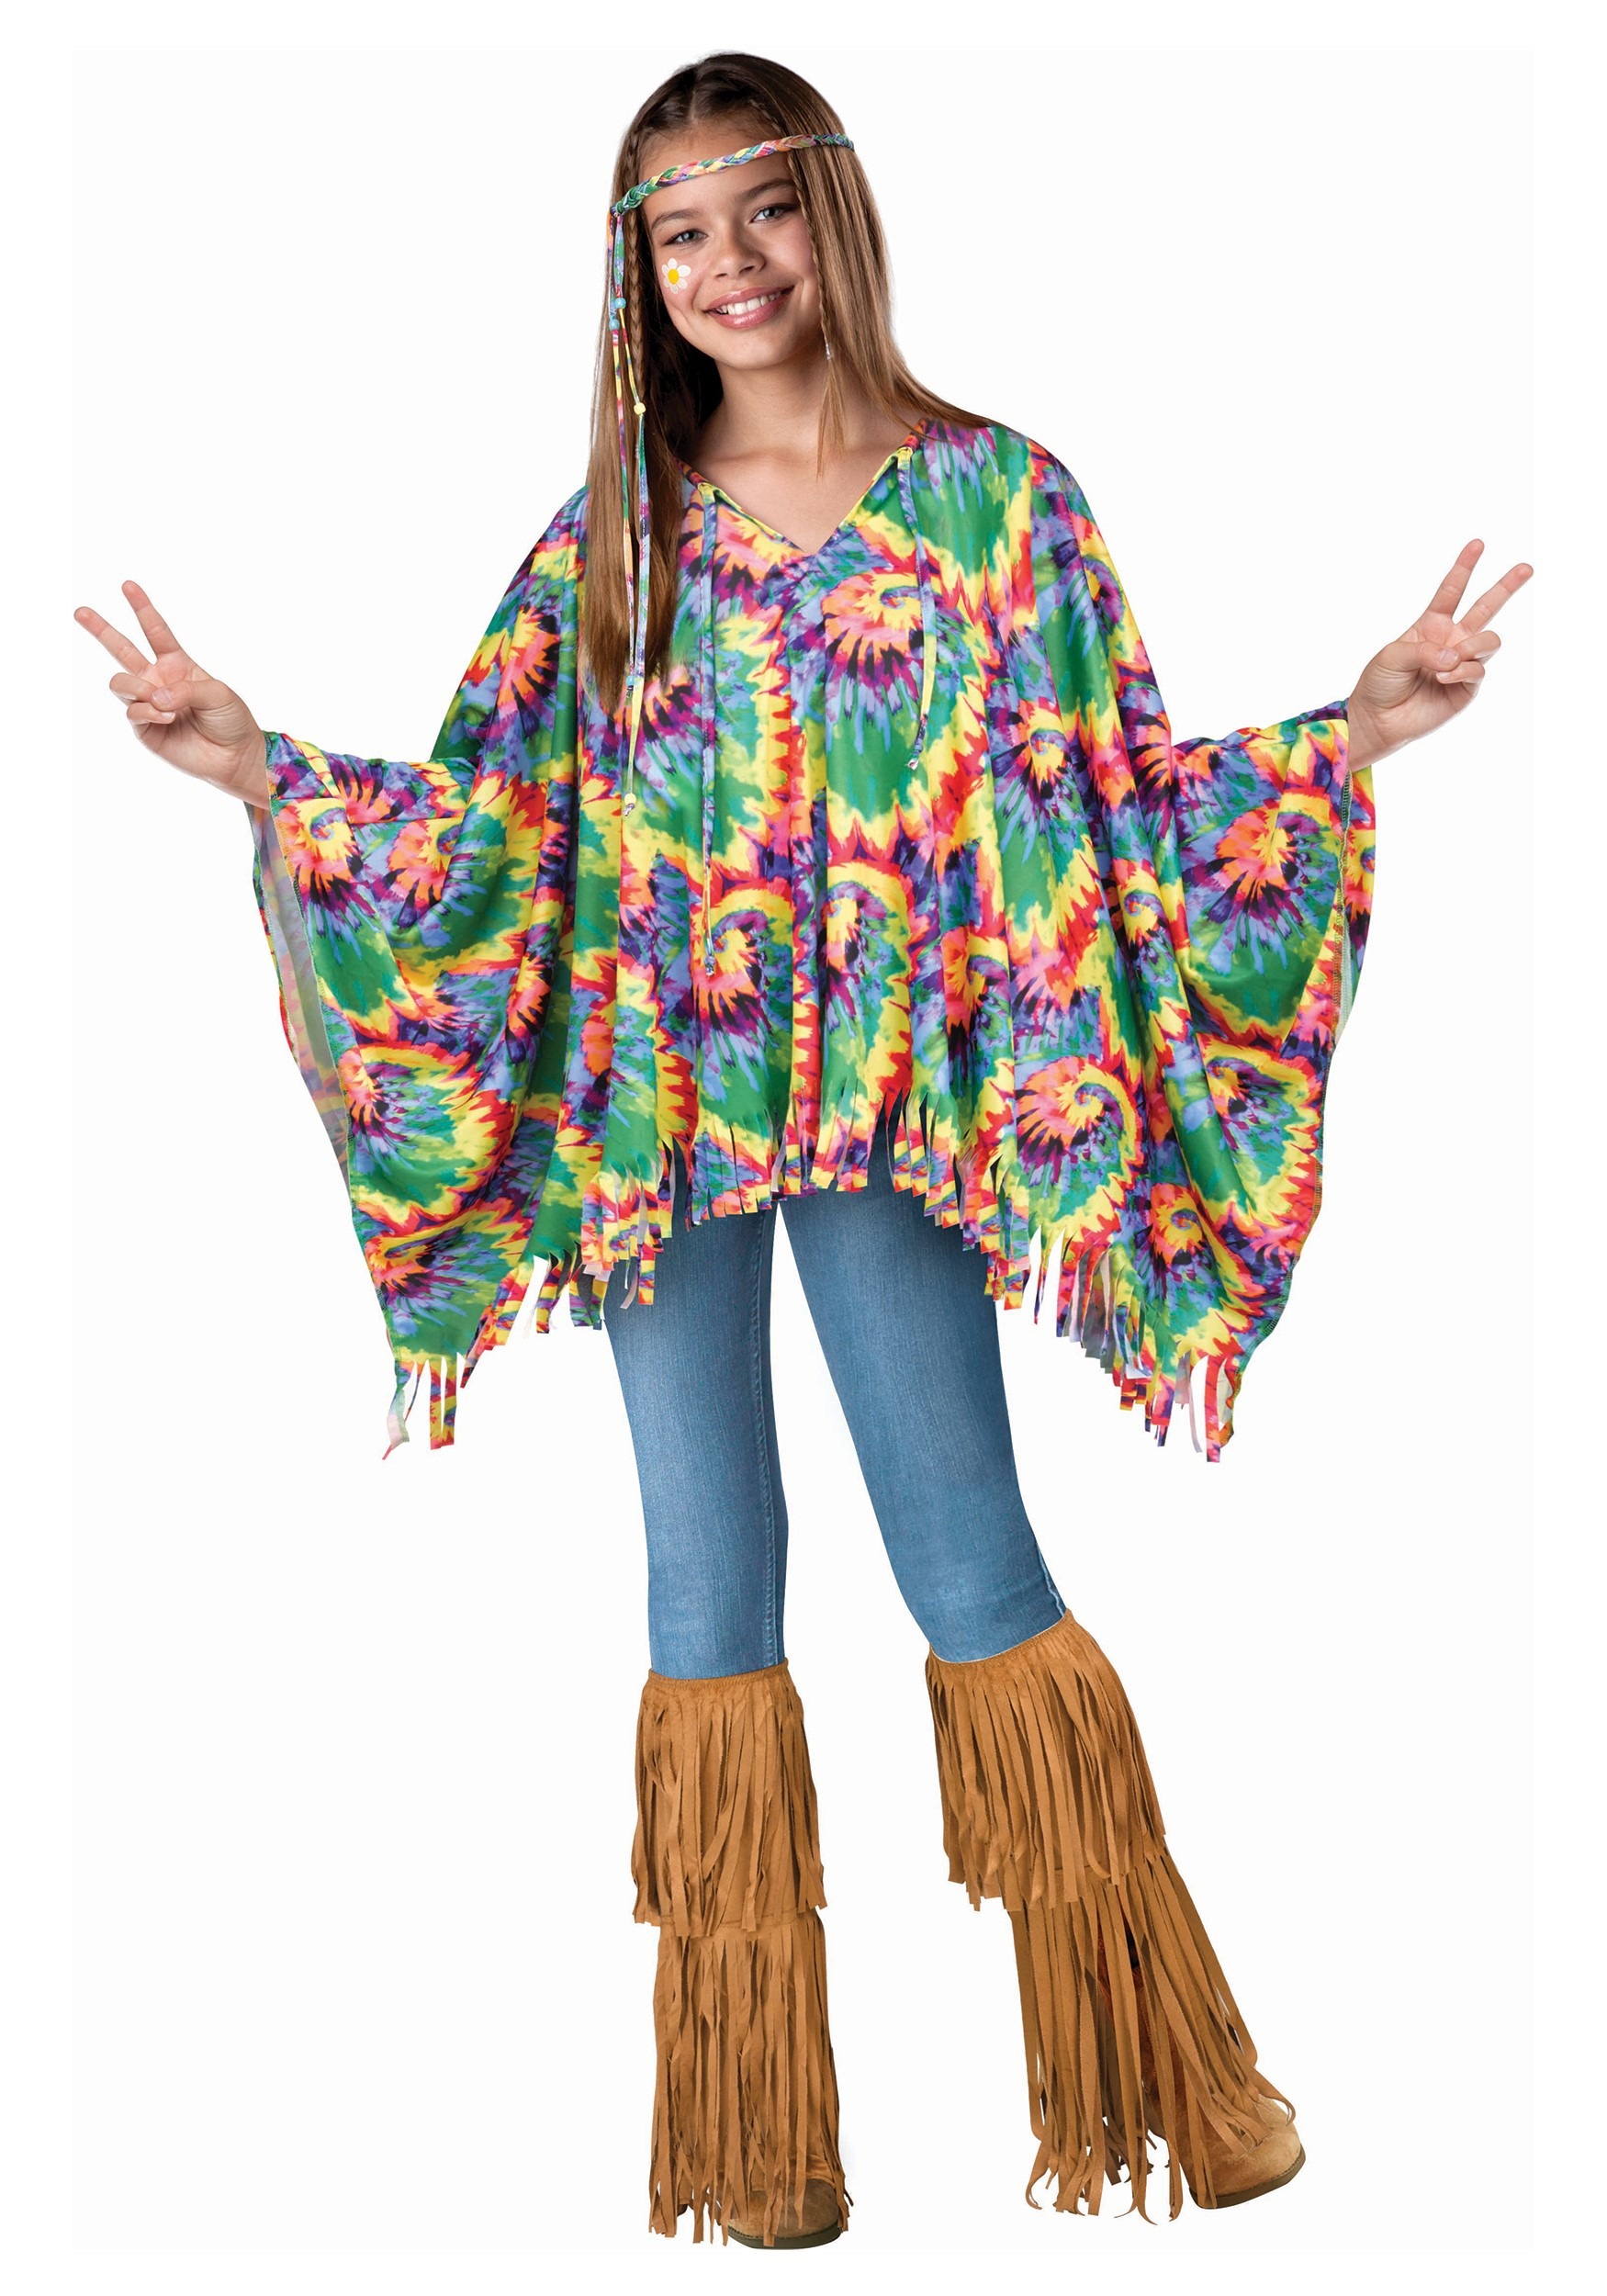 Woodstock 60s Hippie Girl's Costume